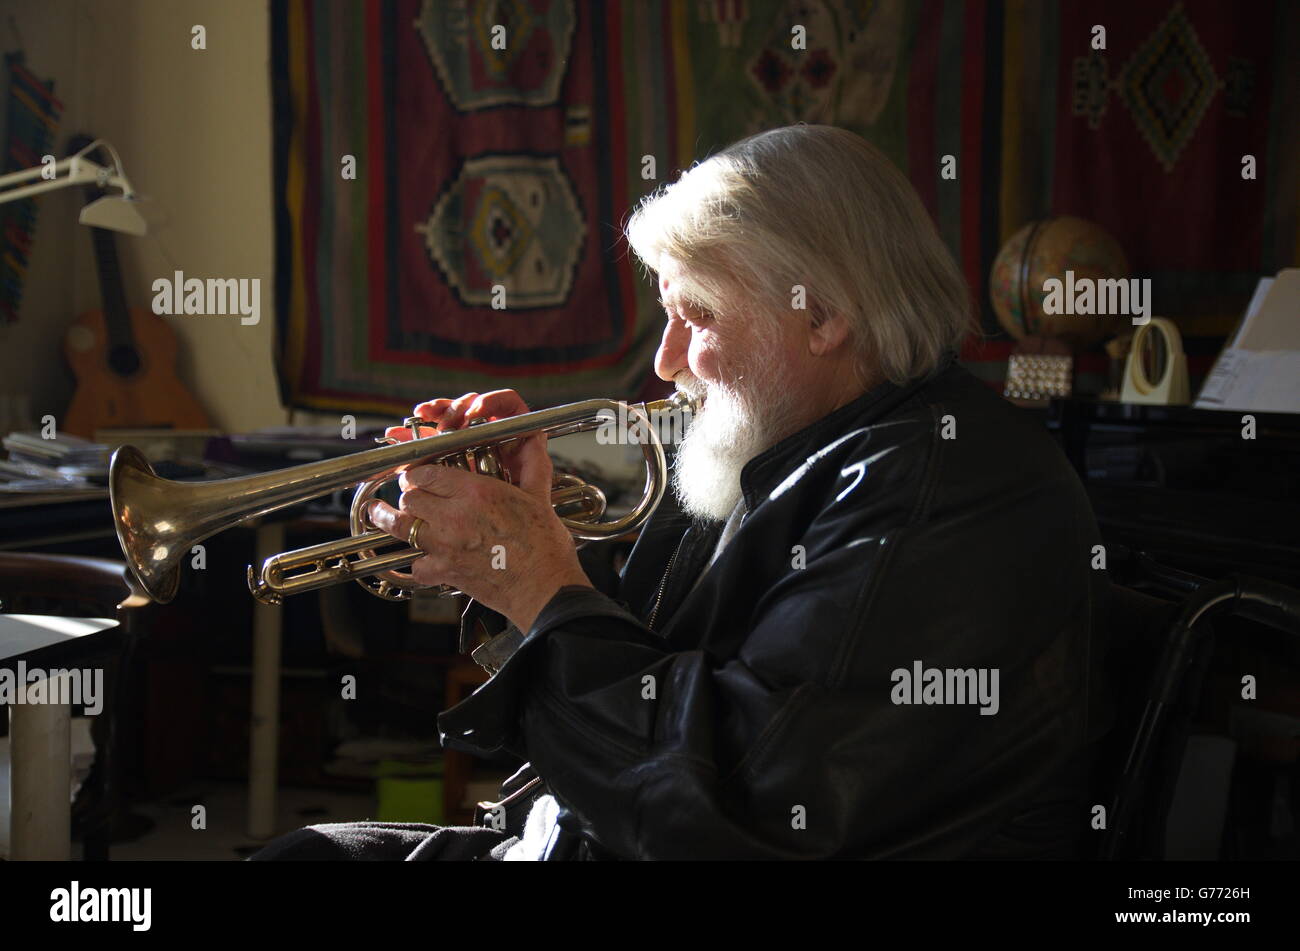 Éclairage latéral puissant capture musicien Robert Wyatt soufflant sa trompette dans son studio de Lincolnshire. Banque D'Images